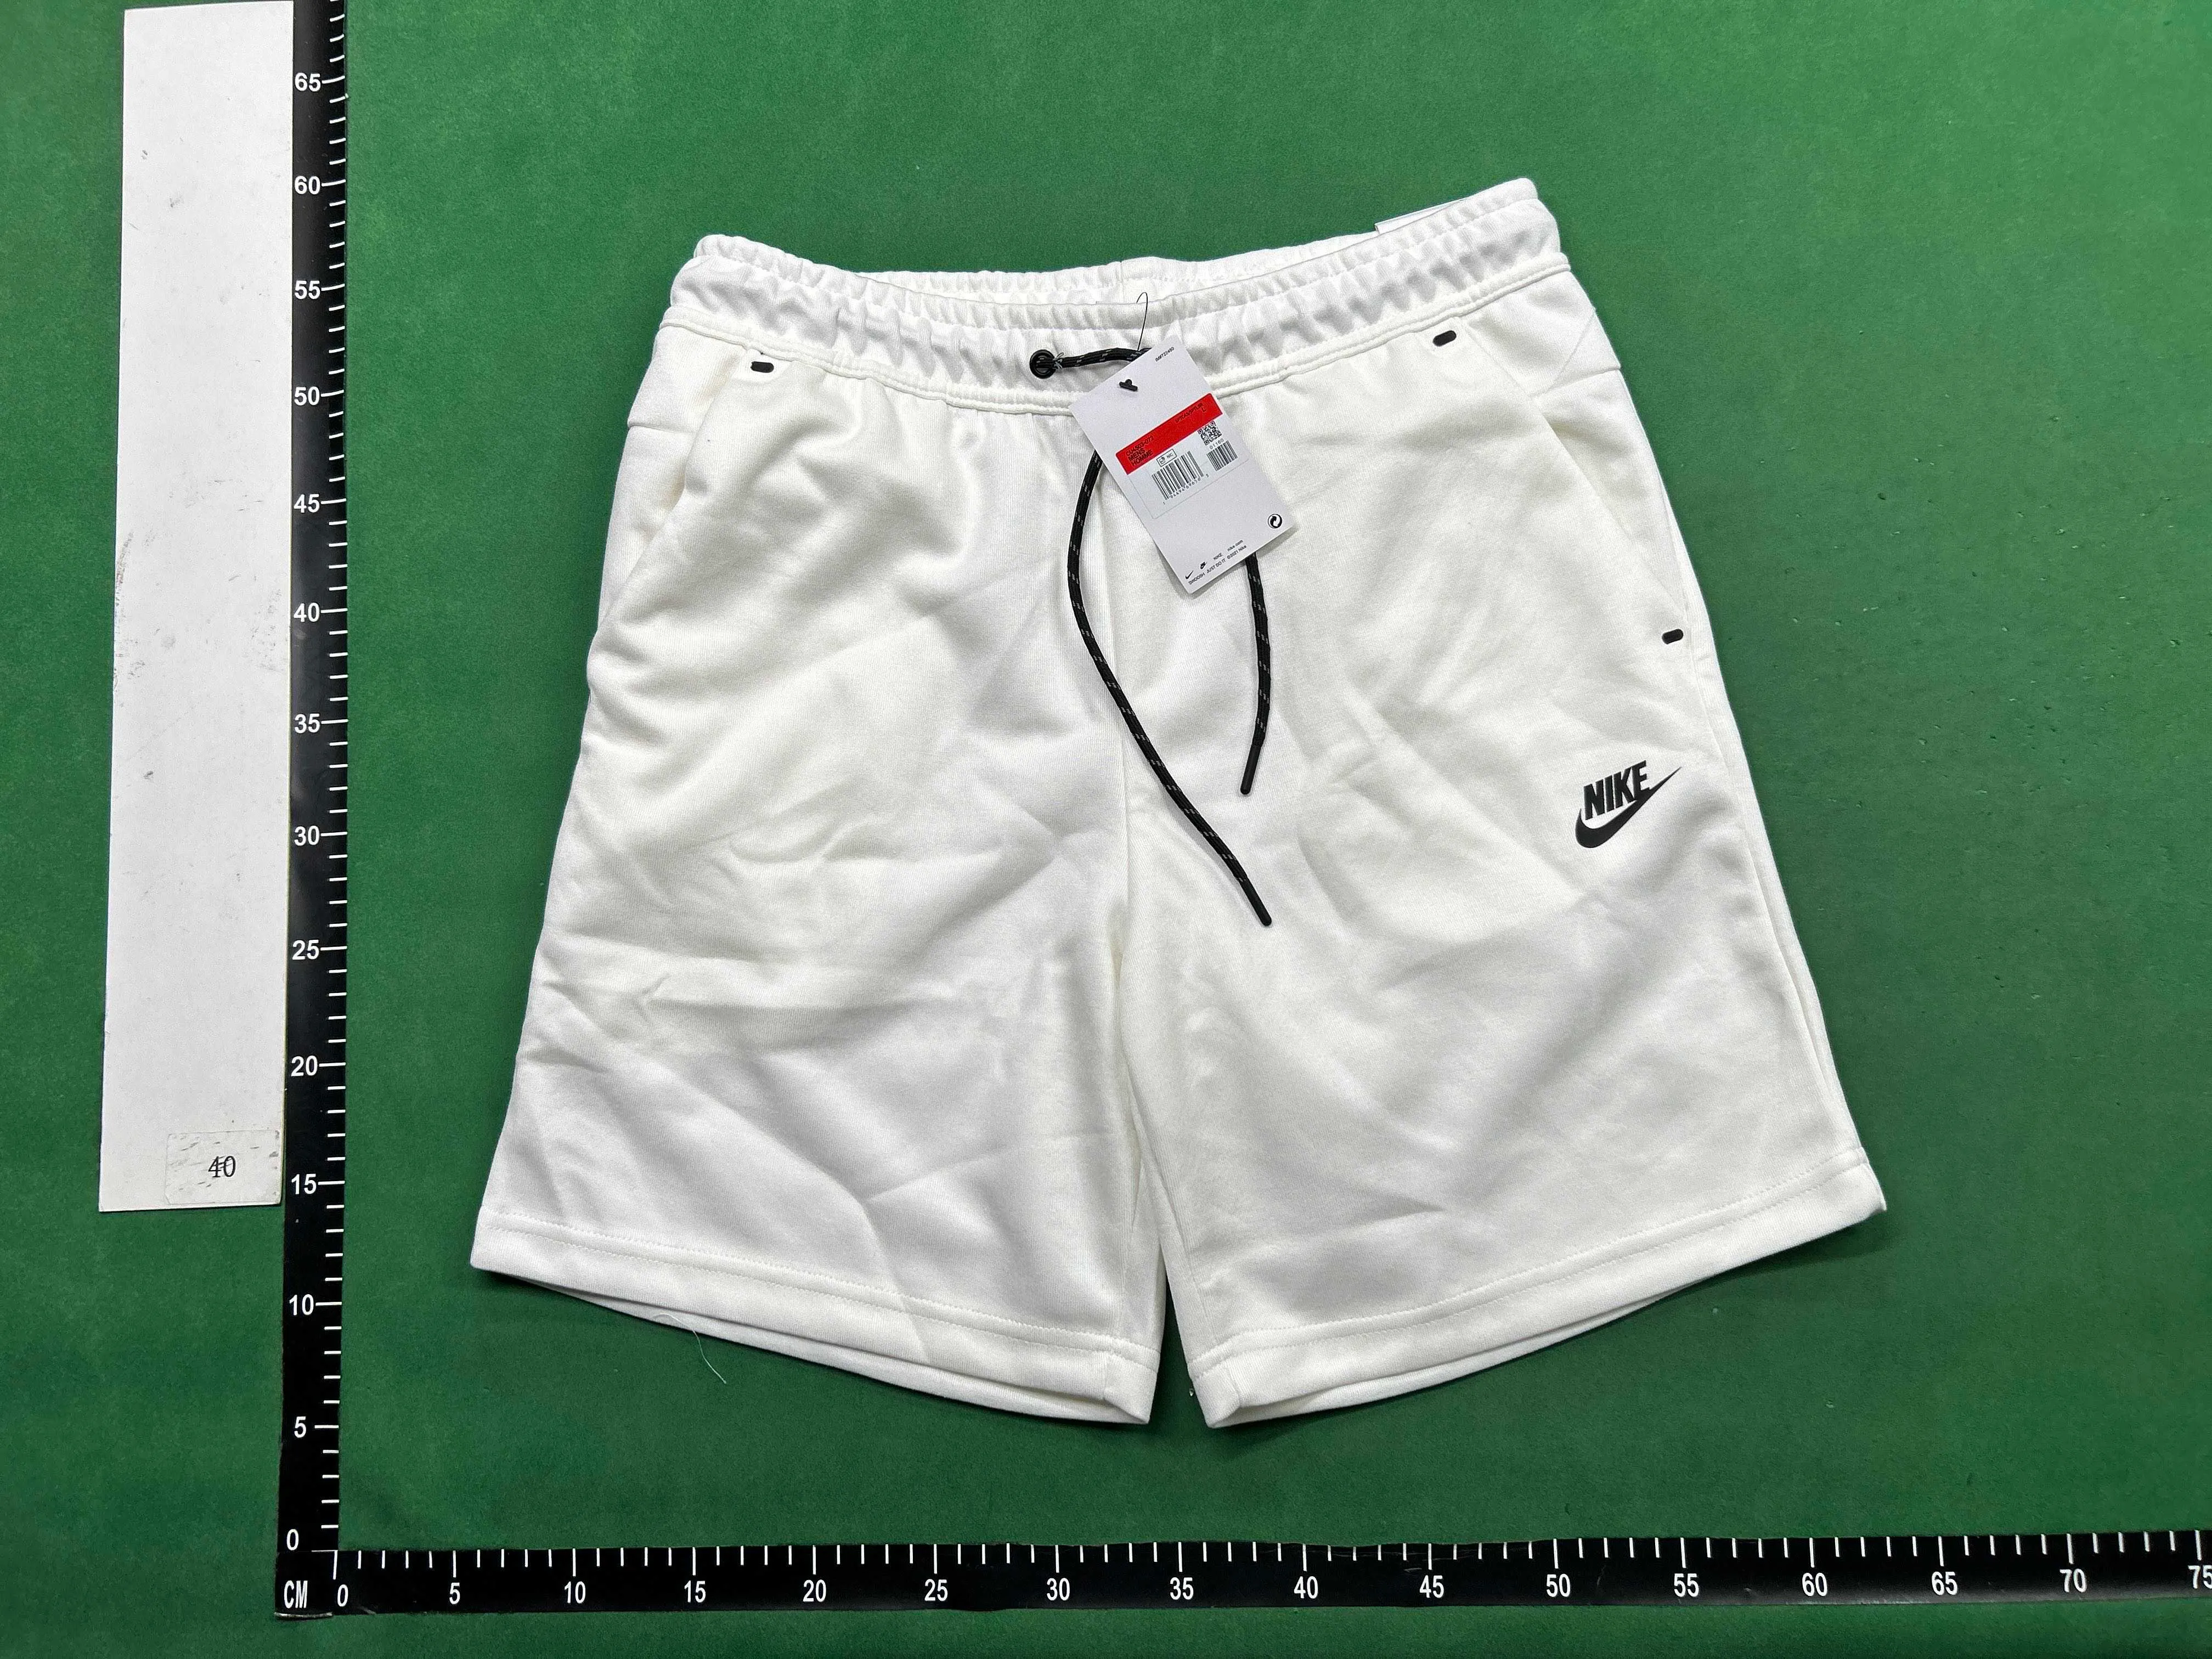 Nike Tech Shorts